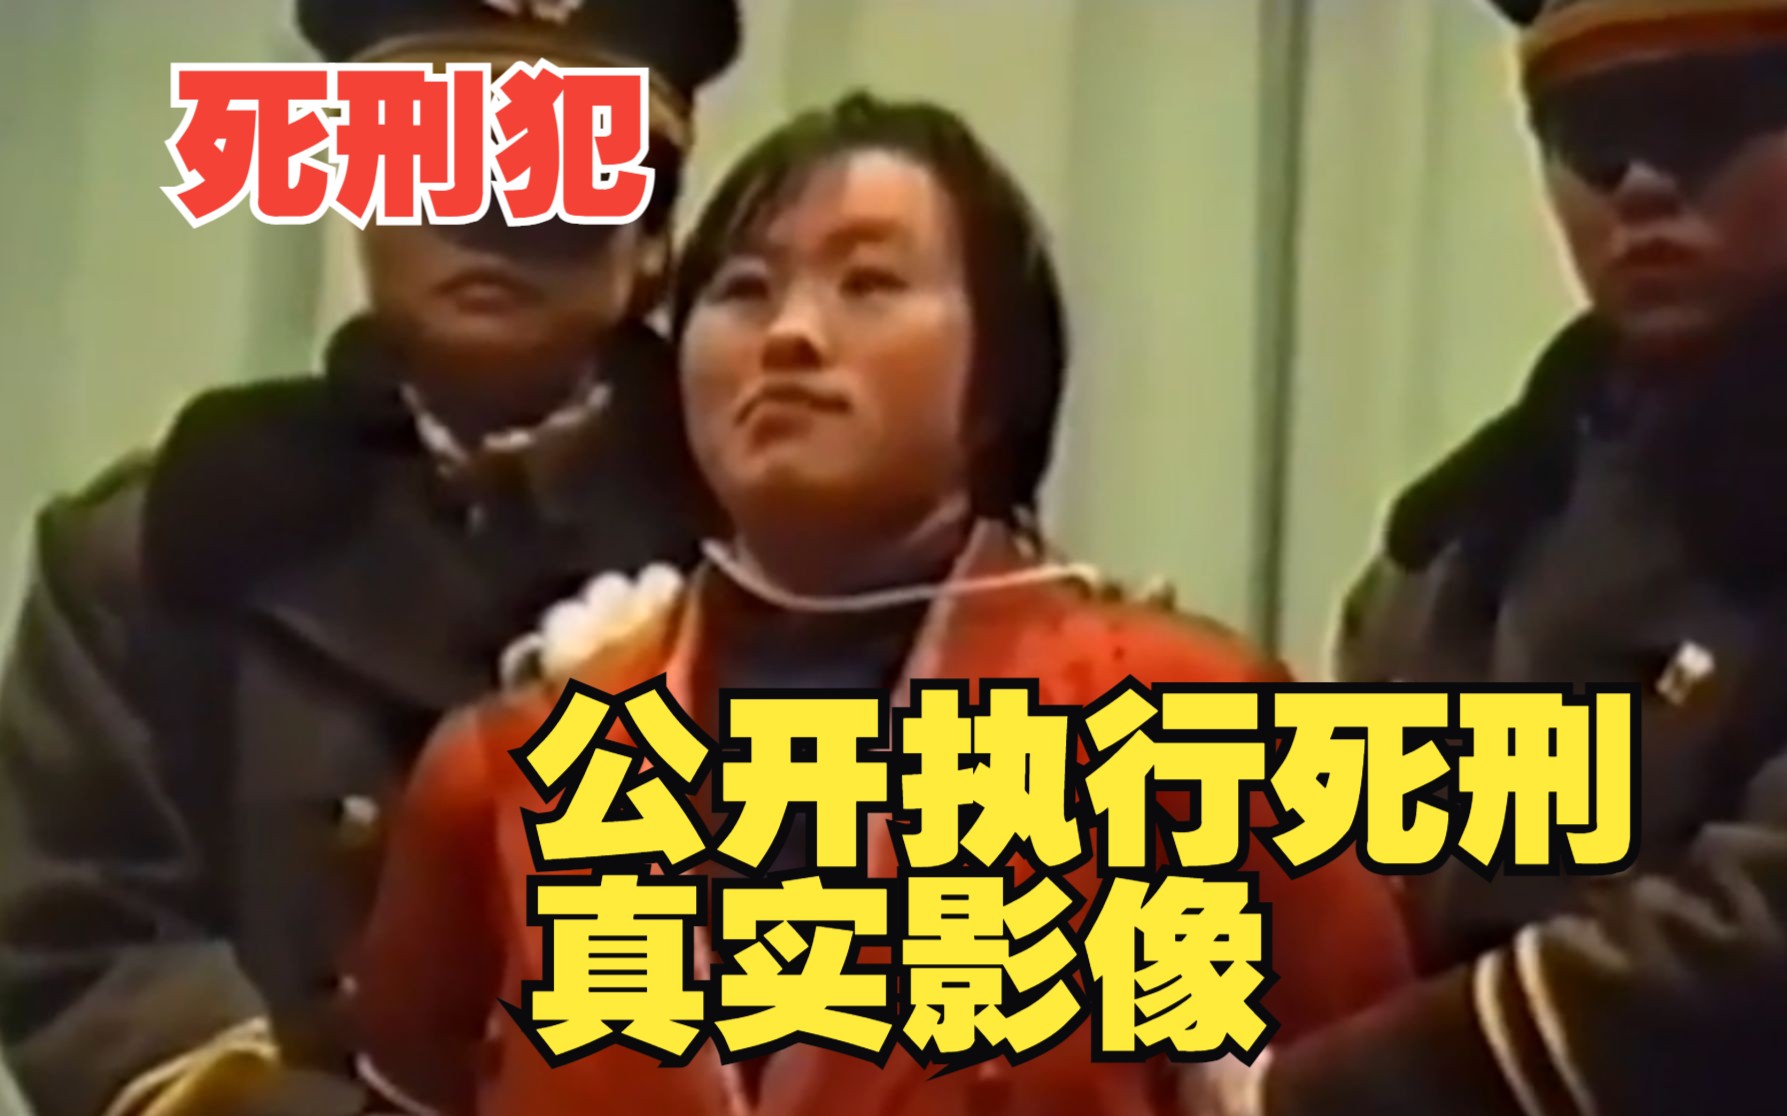 南京女大學生被害案一審宣判 男友被判死刑 - 澳門力報官網